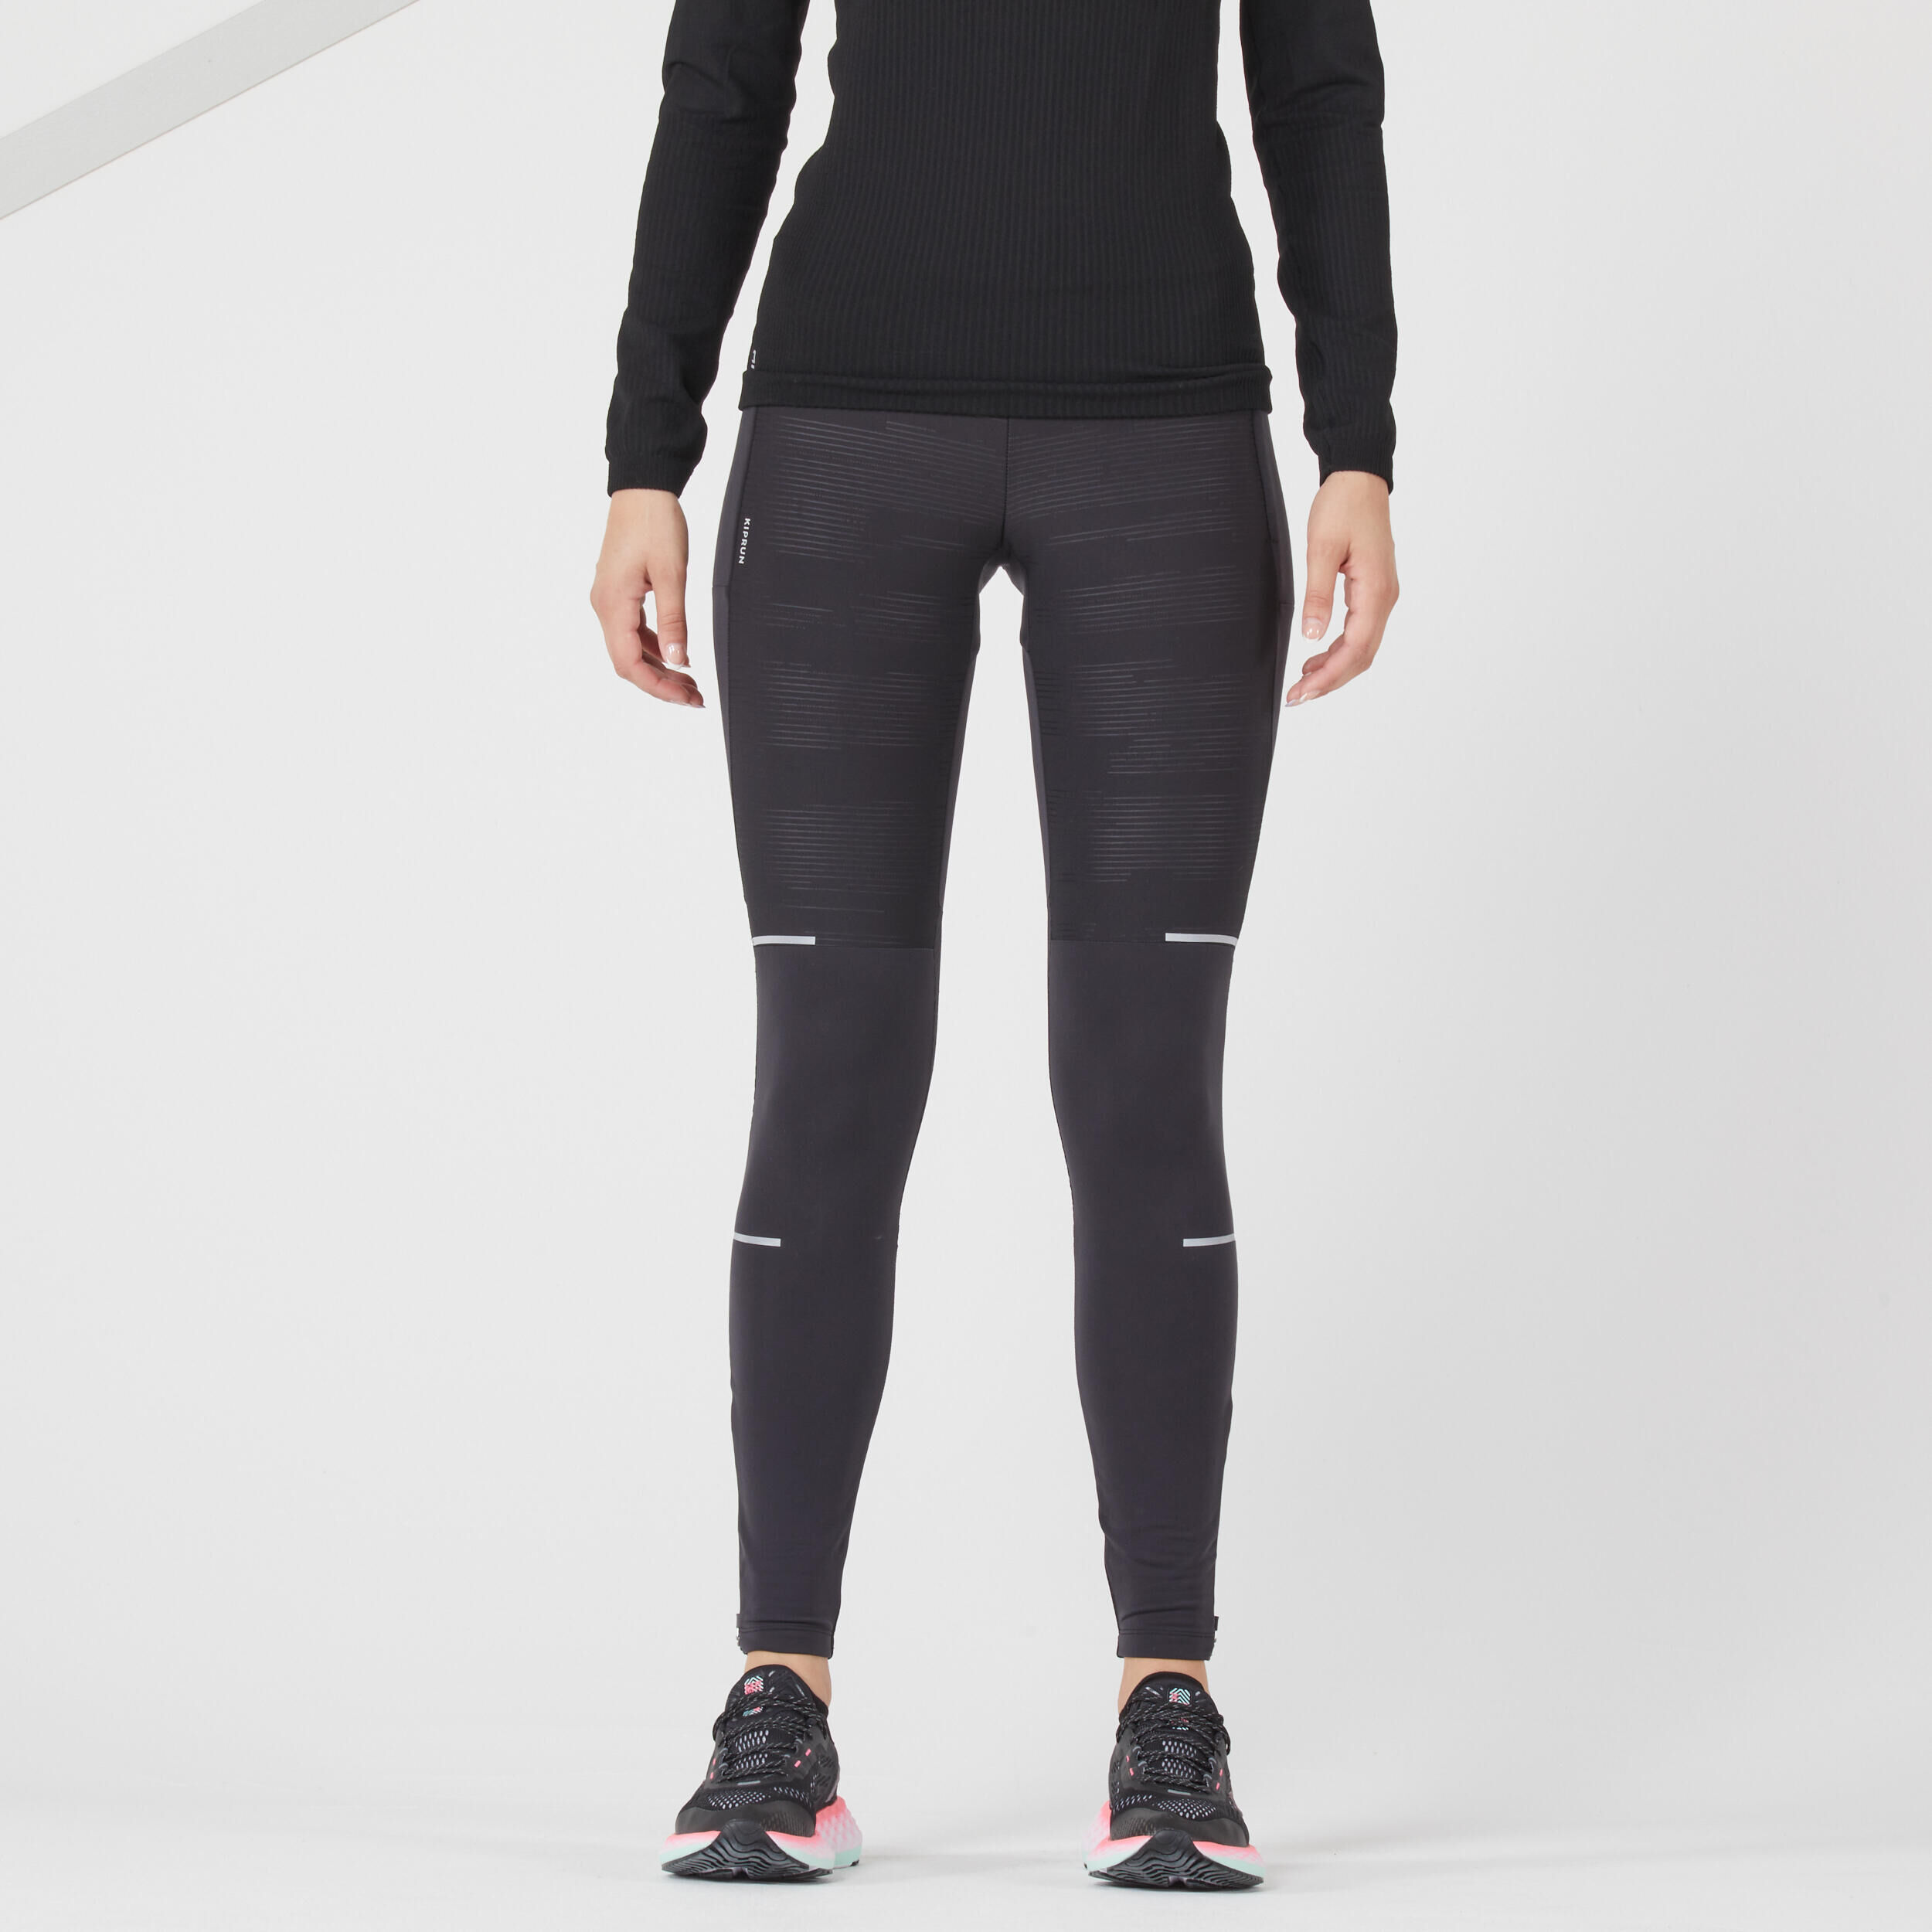 Women's Running Tights, Leggings & Waterproof Trousers